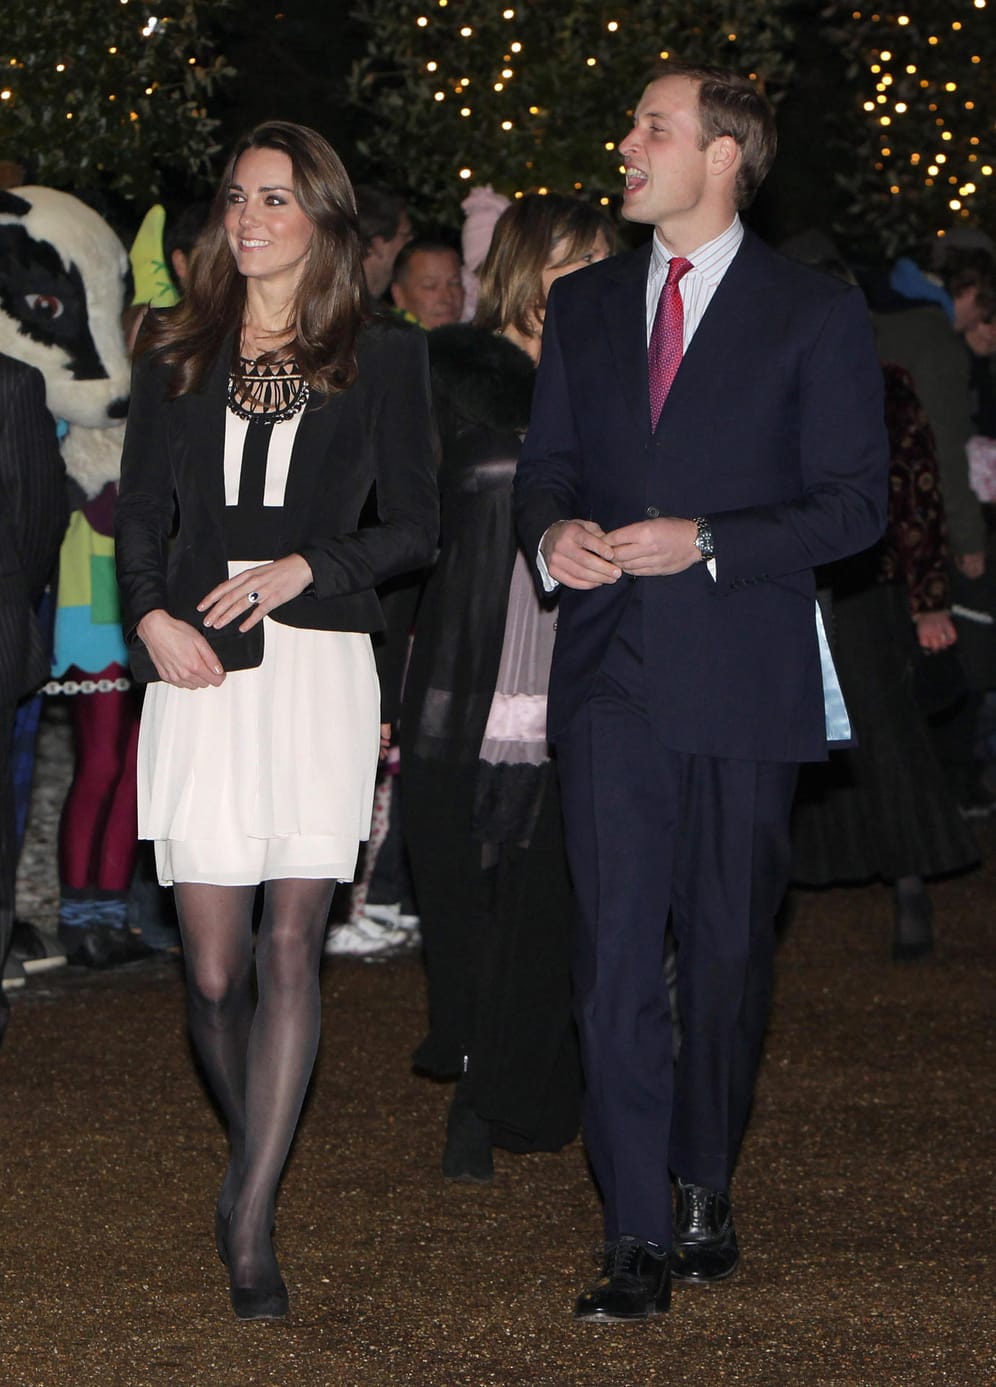 Dezember 2010: Bei einem Charity-Event in Fakenham trägt die Verlobte von Prinz William nun, wie es das Protokoll verlangt, eine Strumpfhose und einen Blazer, der die Arme bedeckt.